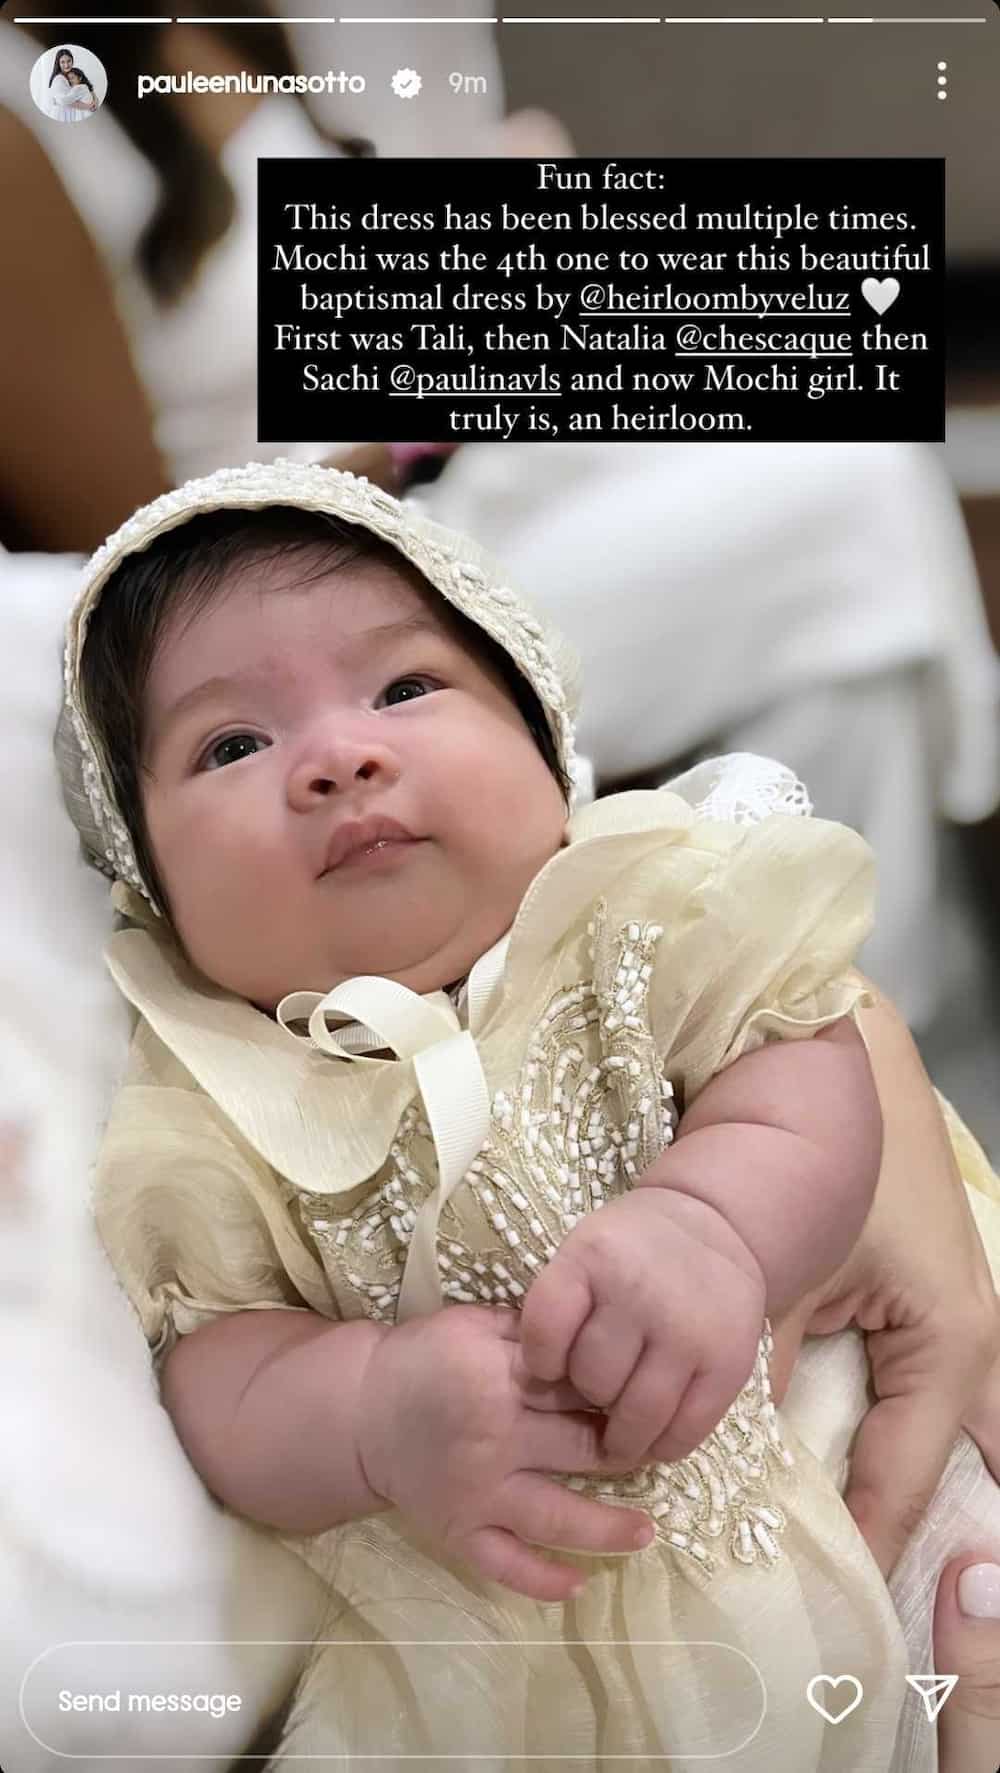 Pauleen Luna, may fun fact sa baptismal dress ni Baby Mochi: "An heirloom"